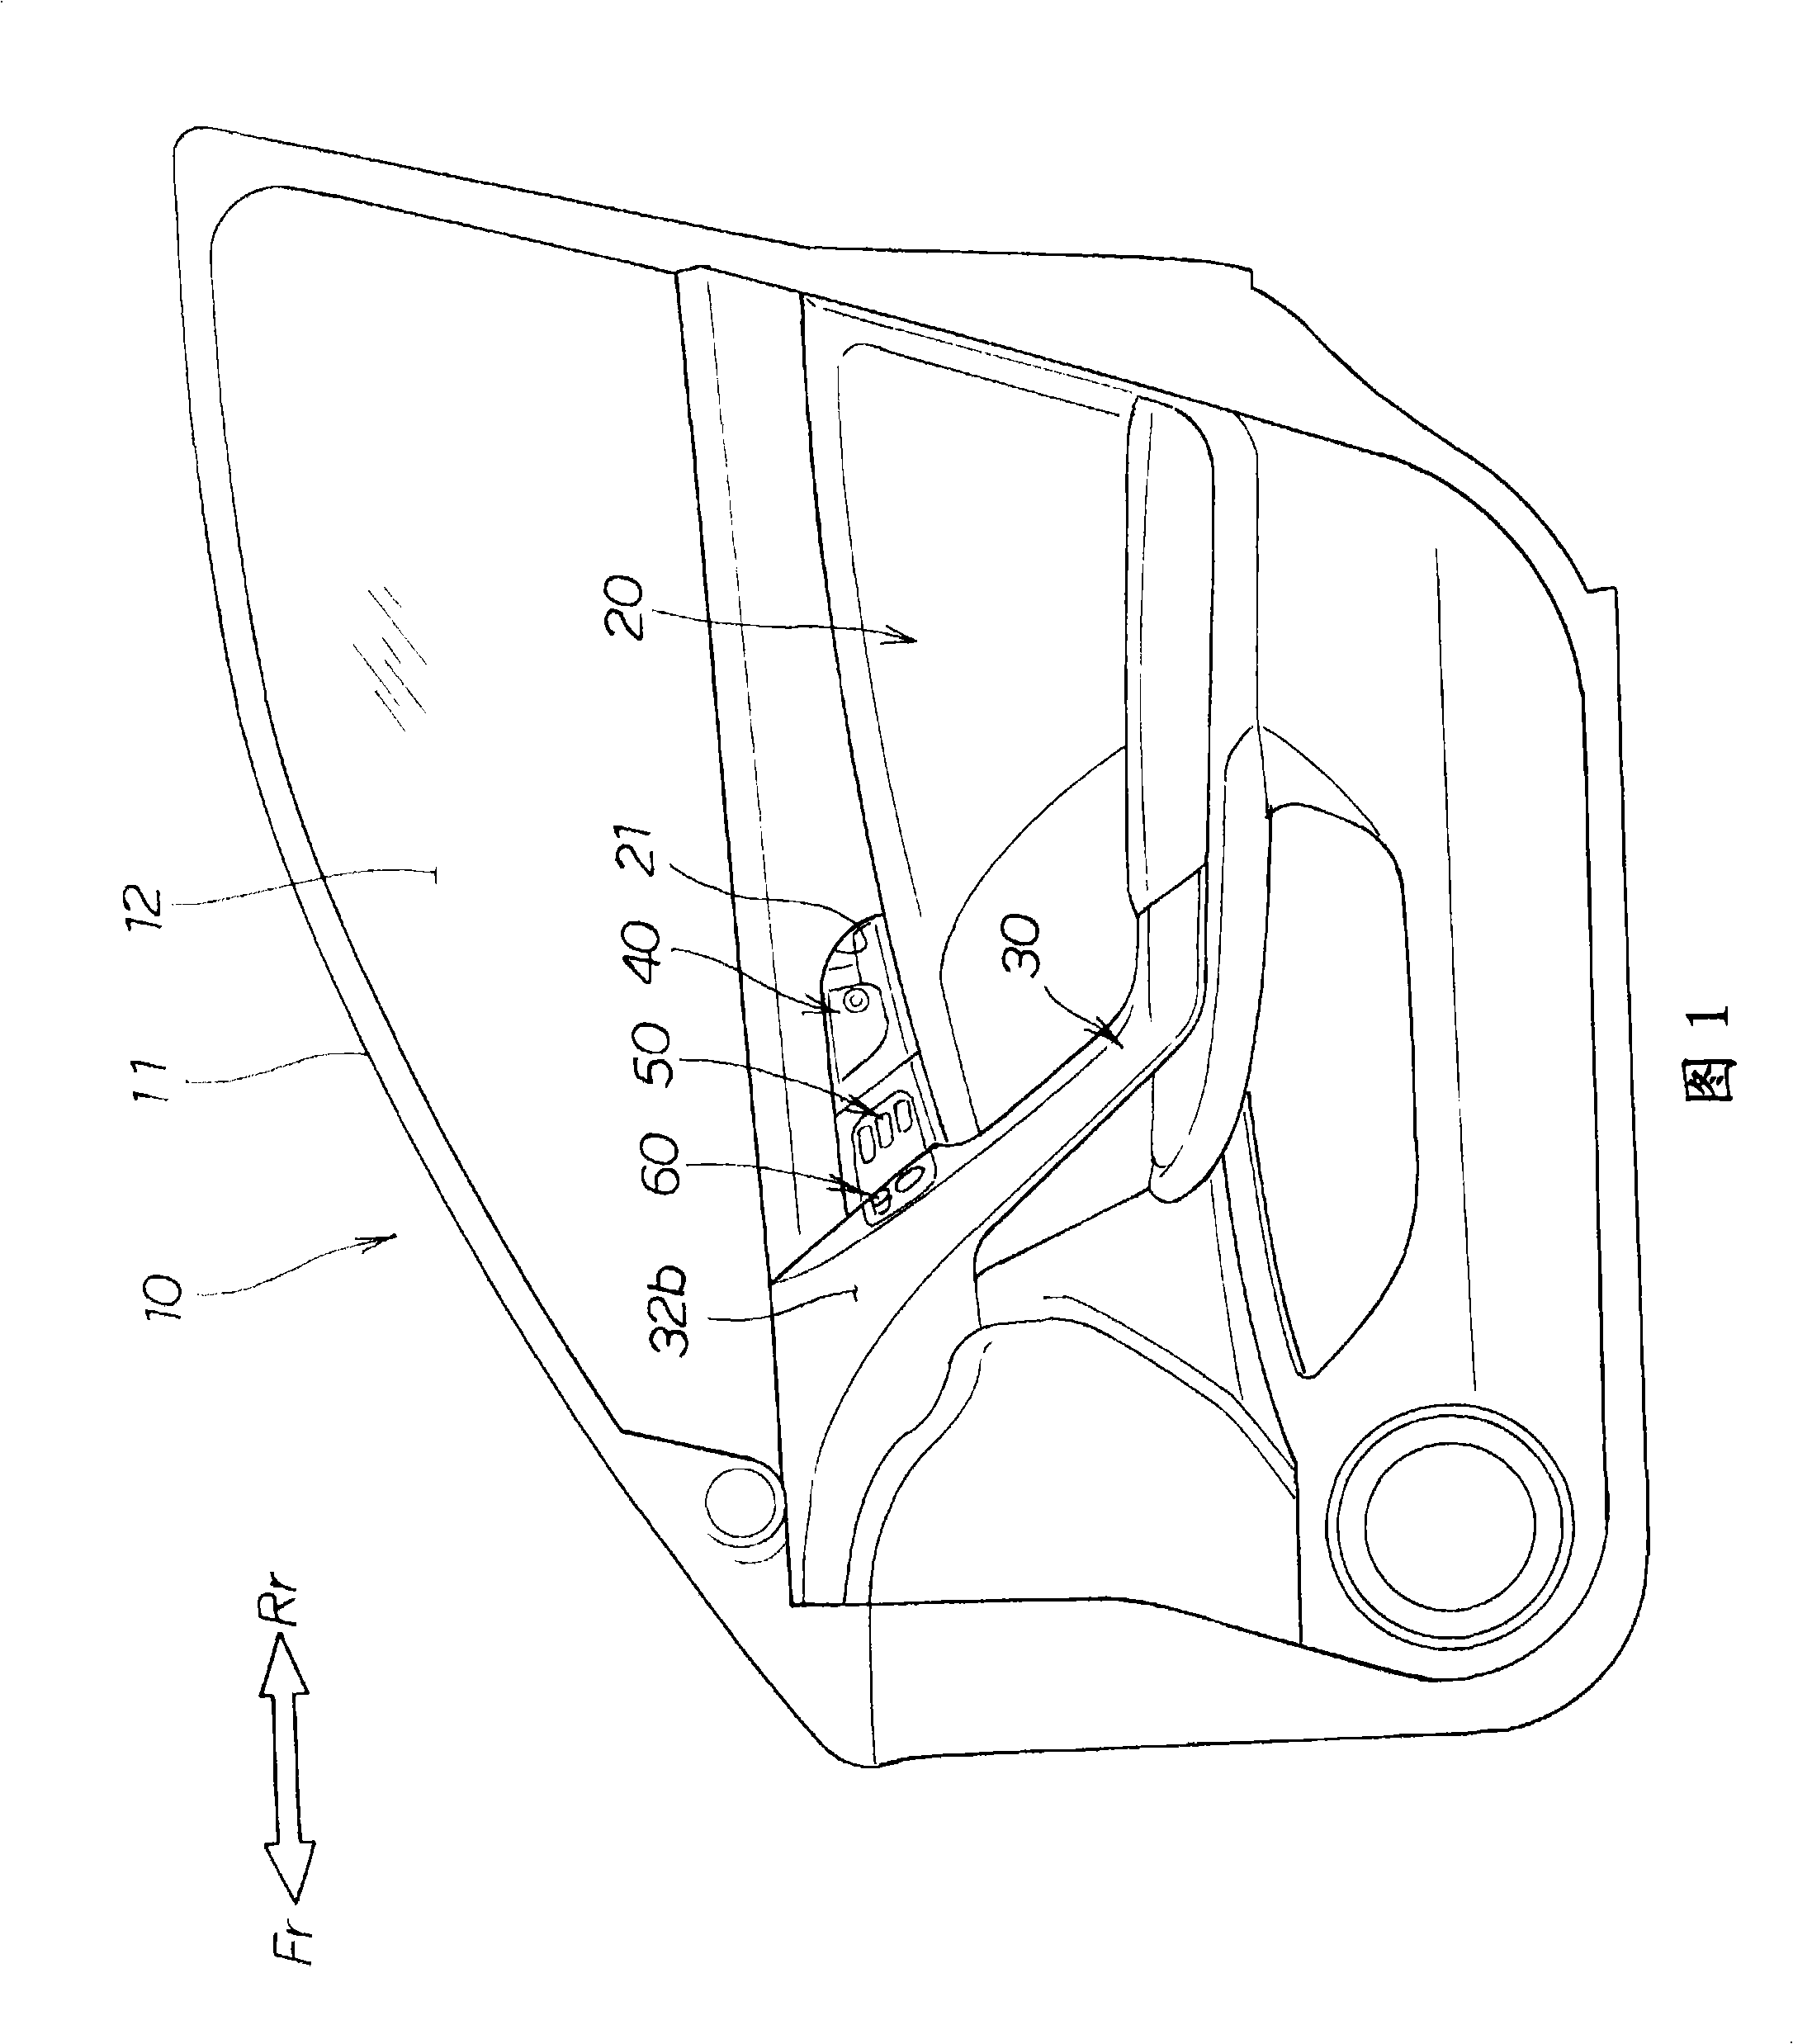 Door structure for vehicle